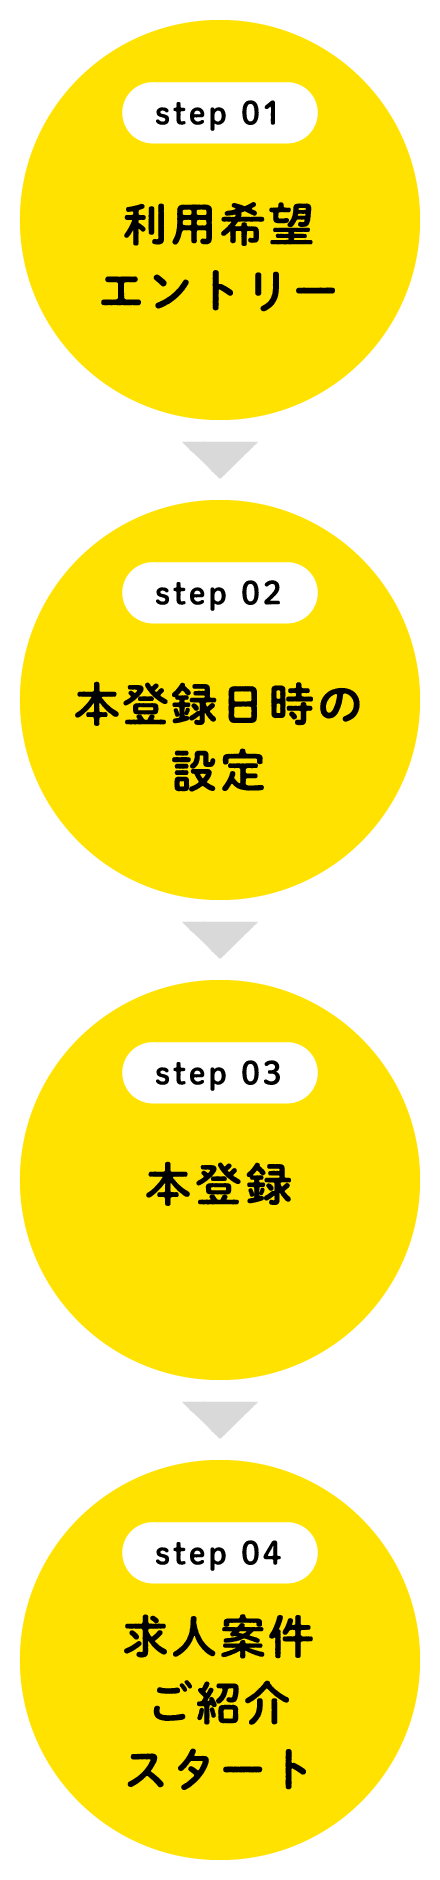 
							step 01：利用希望エントリー→
							step 02：本登録日時の設定→
							step 03：本登録→
							step 04:求人案件ご紹介スタート
							